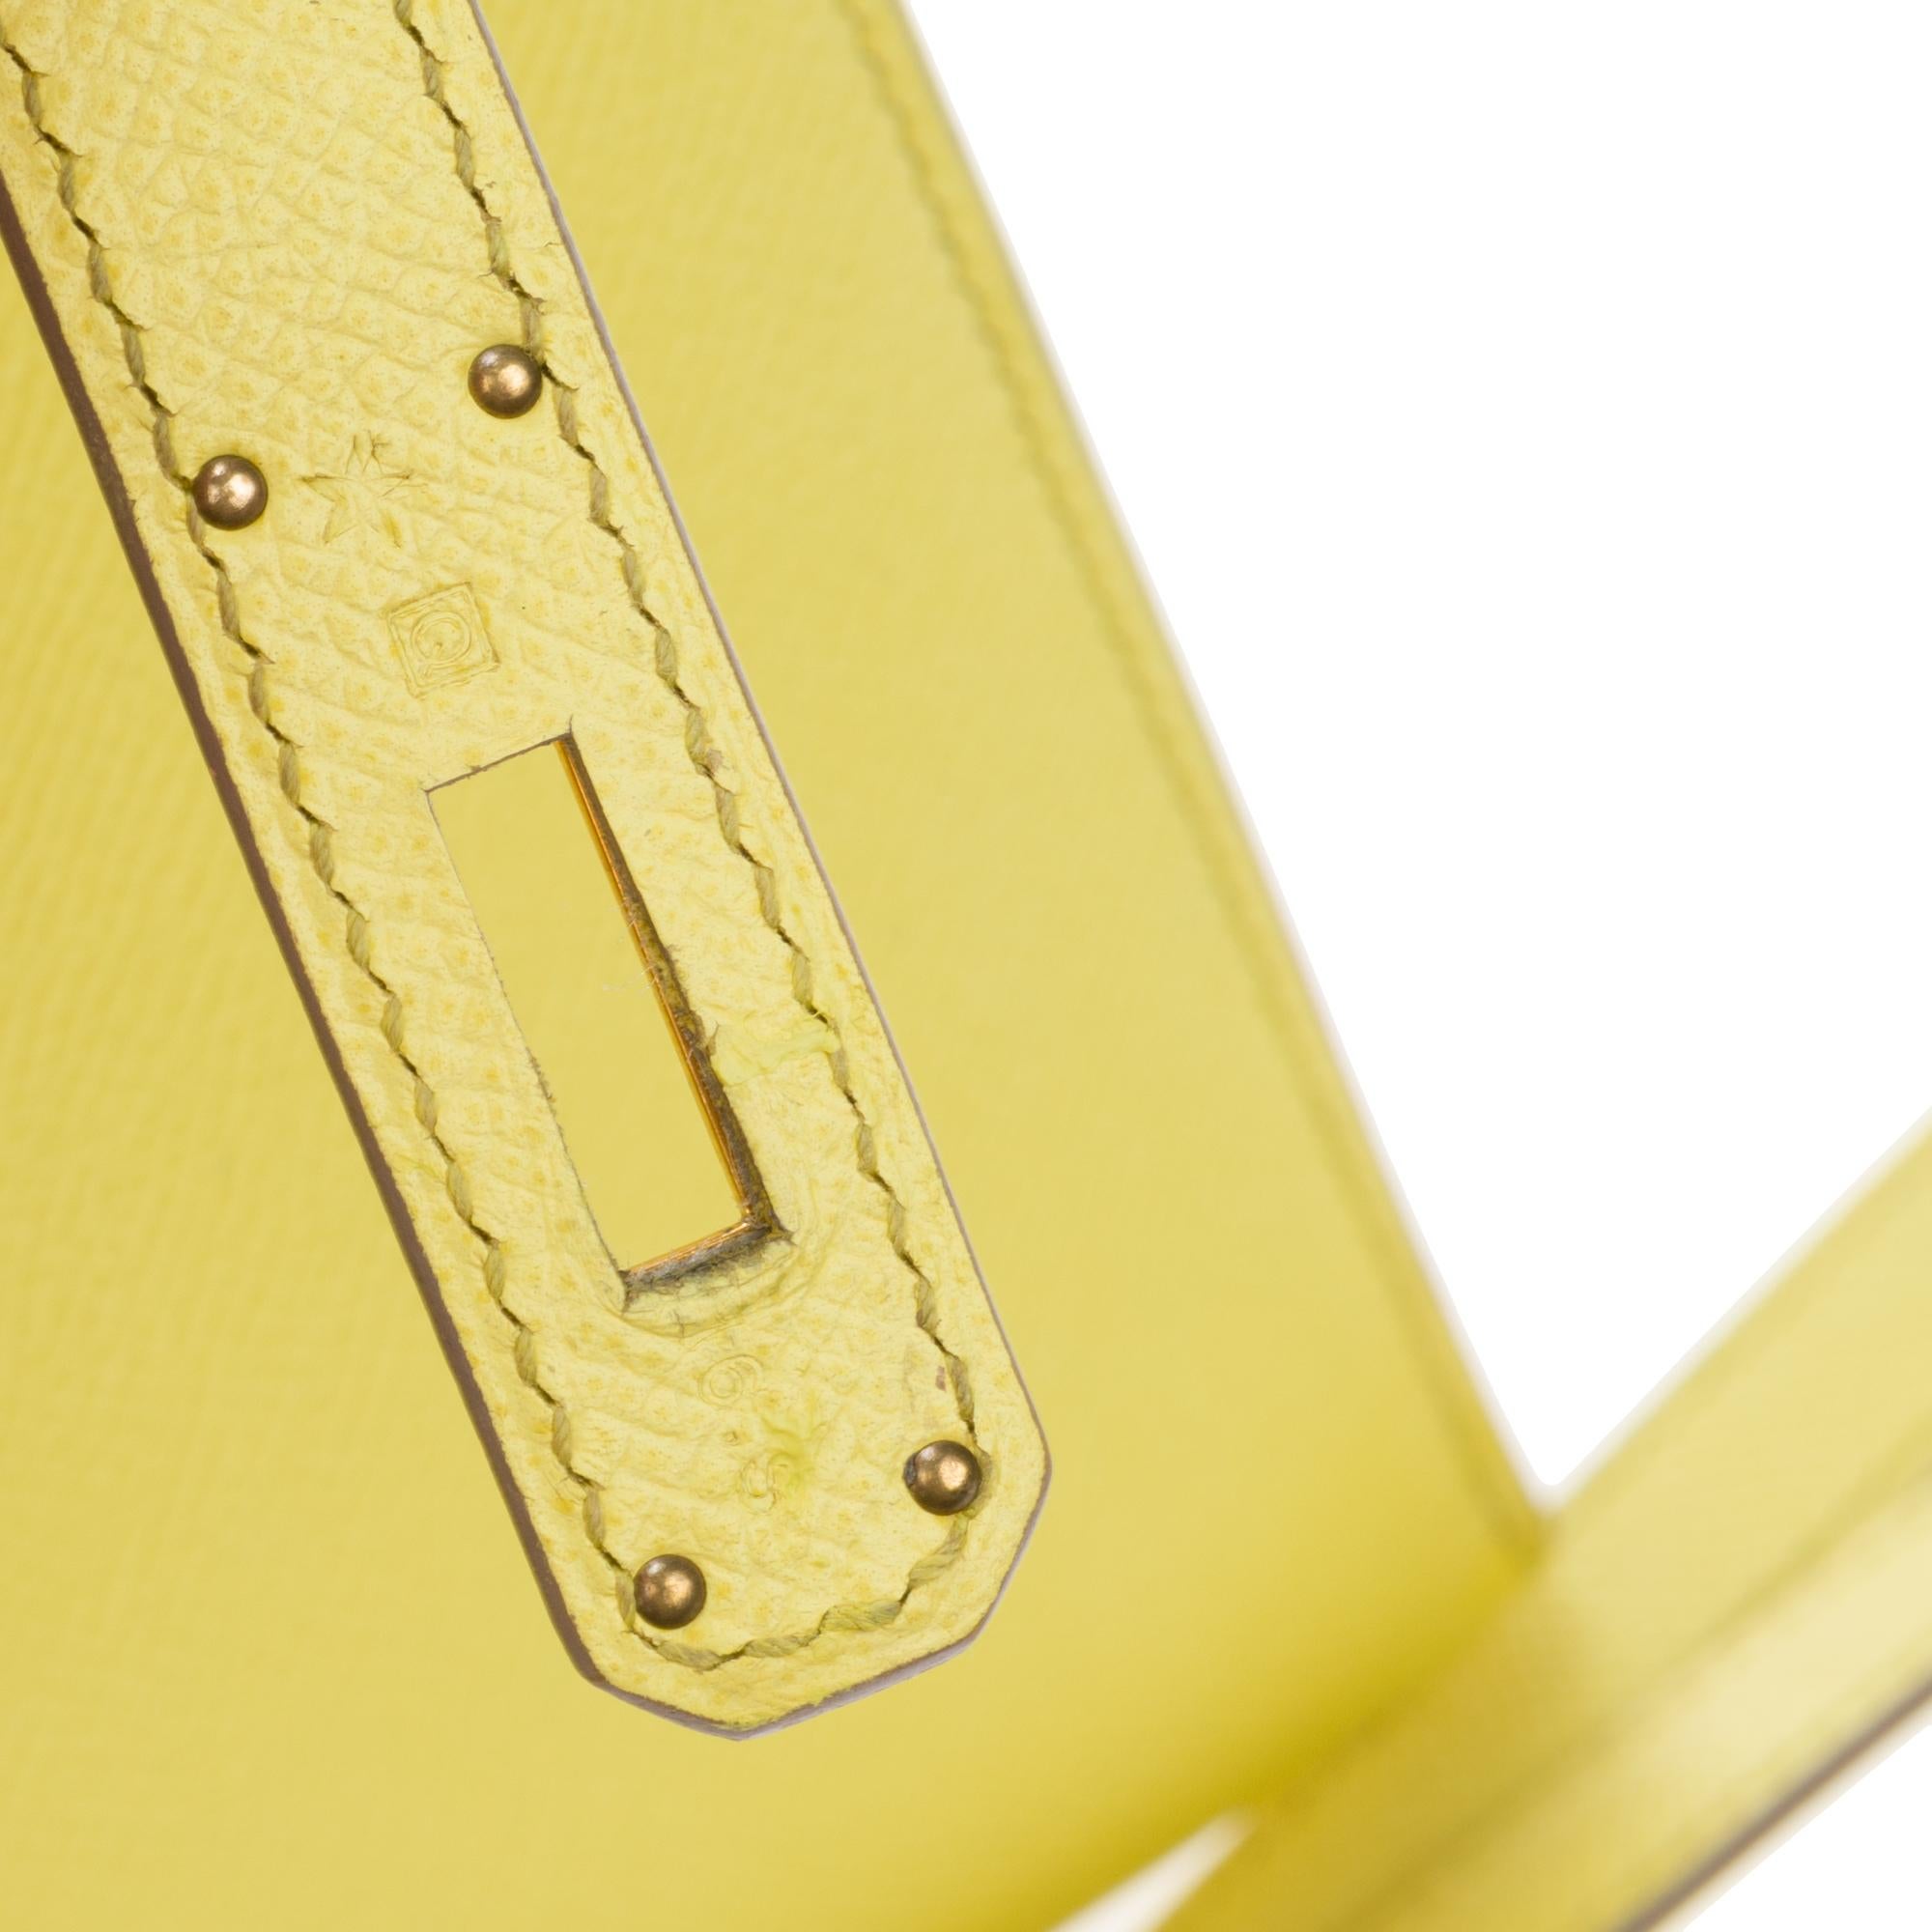 Erstaunlich Hermès Kelly 35 Handtasche mit Gurt in epsom gelb Zitrone Farbe, GHW ! (Gelb)